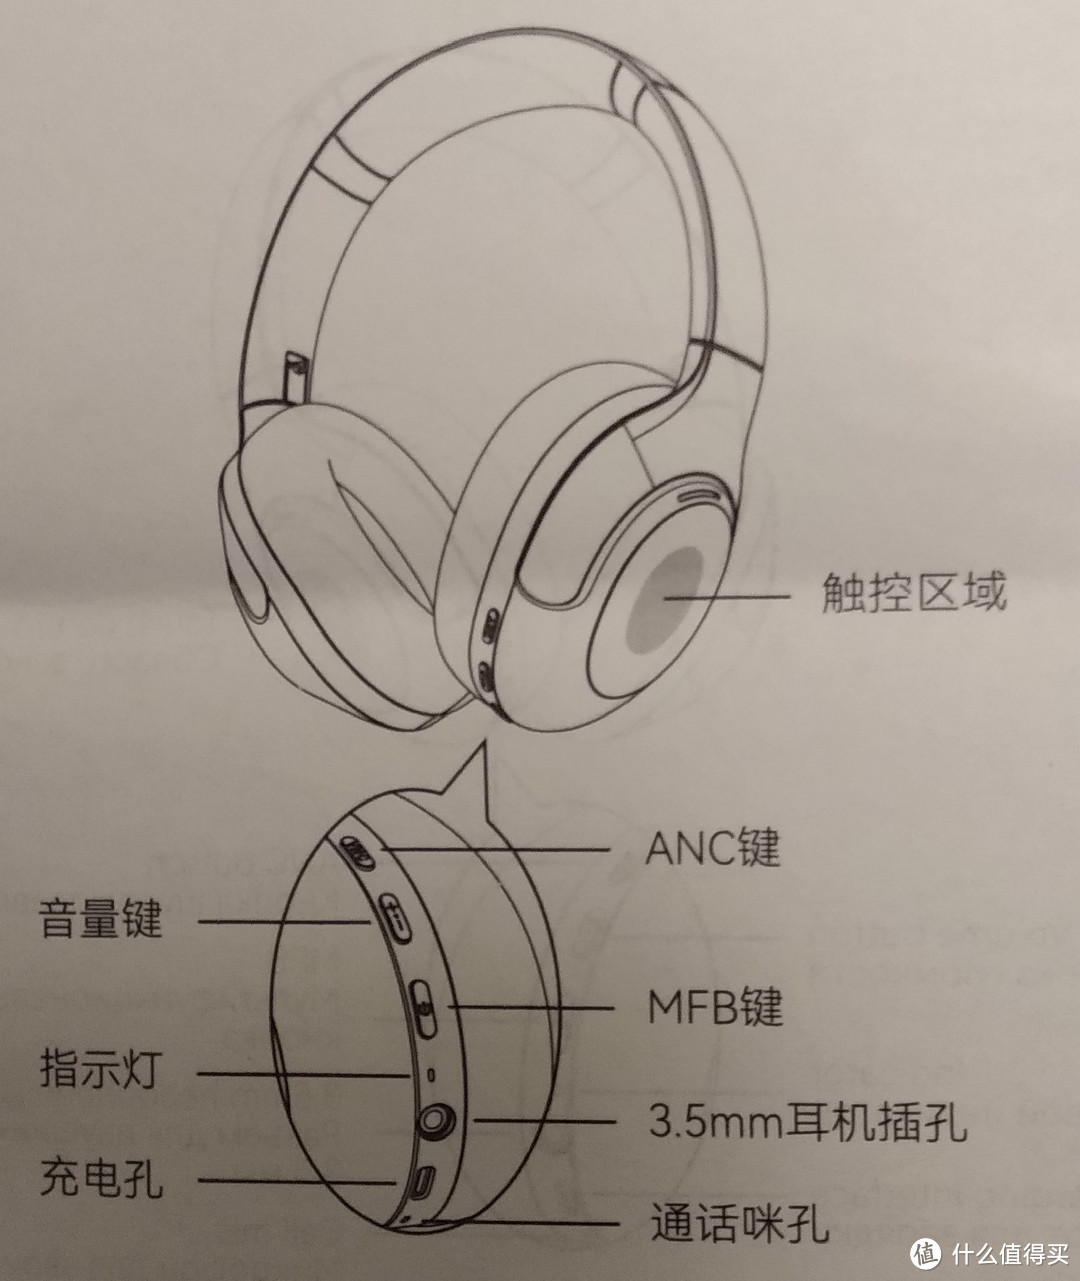 大耳罩耳机 Haylou S35 ANC HiRes开箱使用